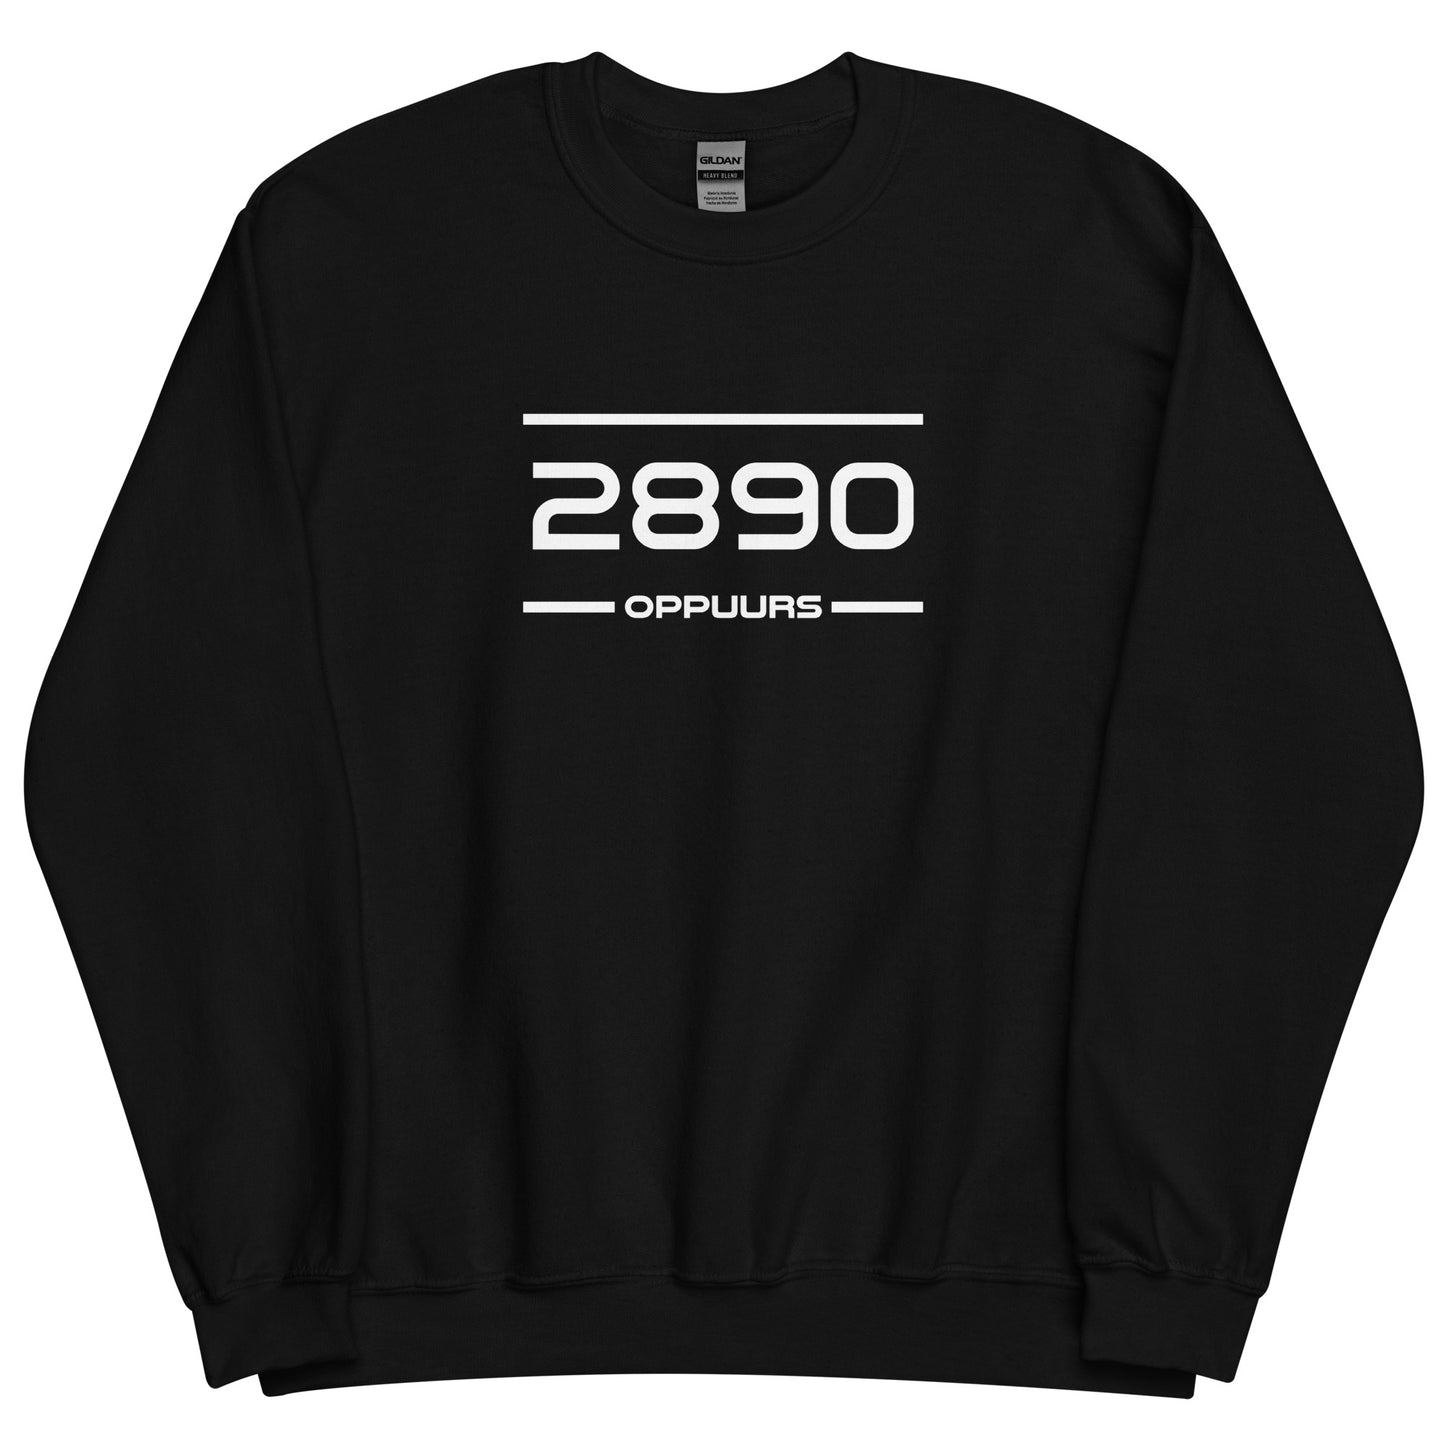 Sweater - 2890 - Oppuurs (M/V)